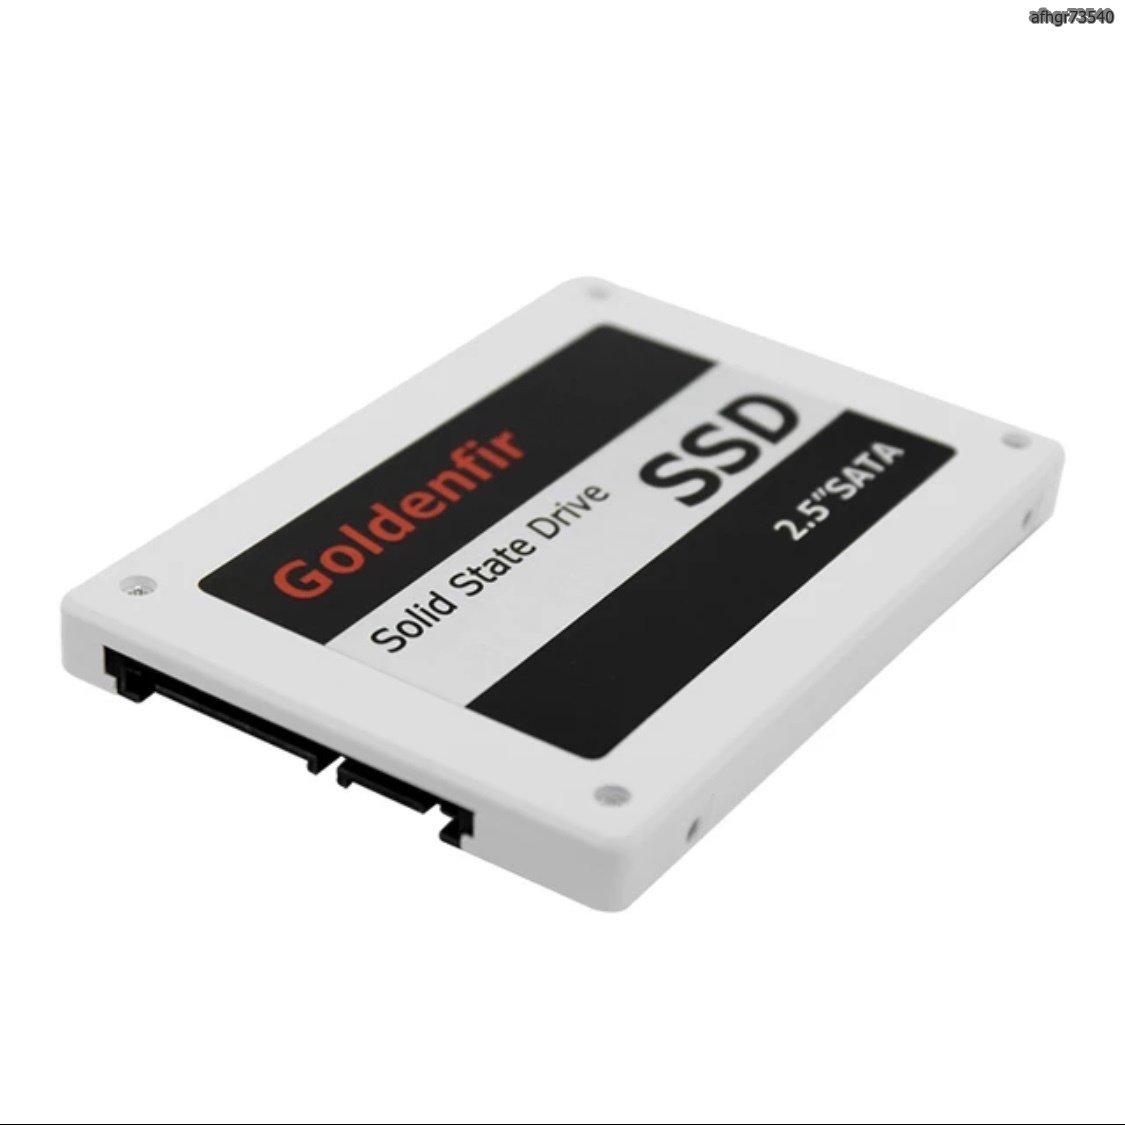 【送料無料】SSD Goldenfir 360GB SATA3 / 6.0Gbps 新品 2.5インチ 高速 NAND TLC 内蔵 デスクトップPC ノートパソコン (a1241)_画像6